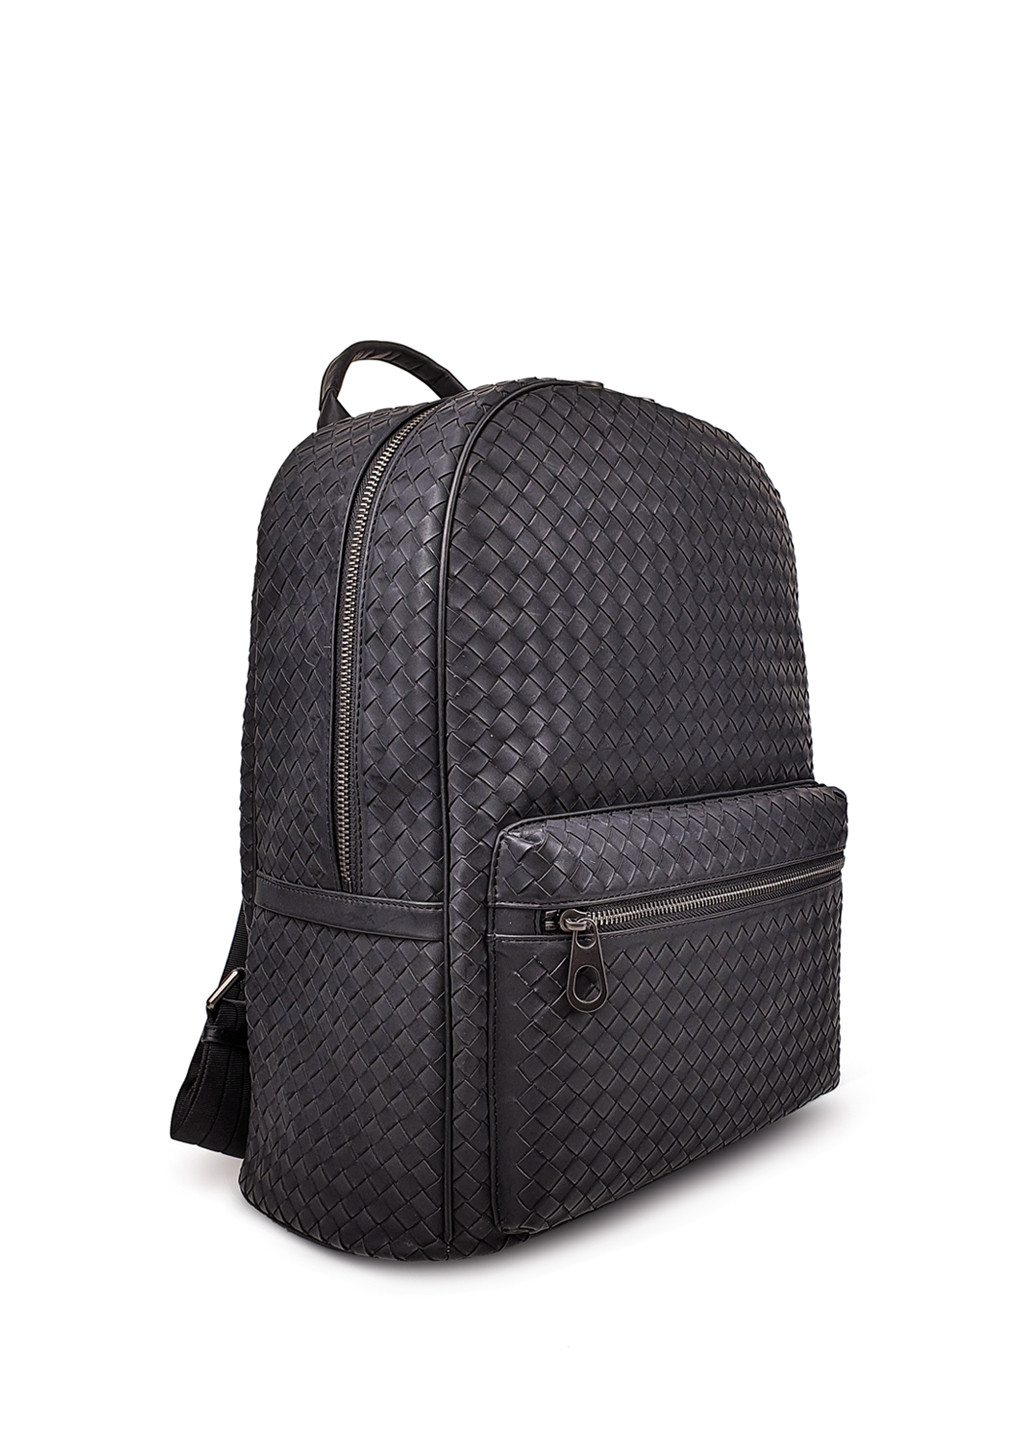 Модный мужской кожаный рюкзак темно-серого цвета Fashion рюкзак (251825960)